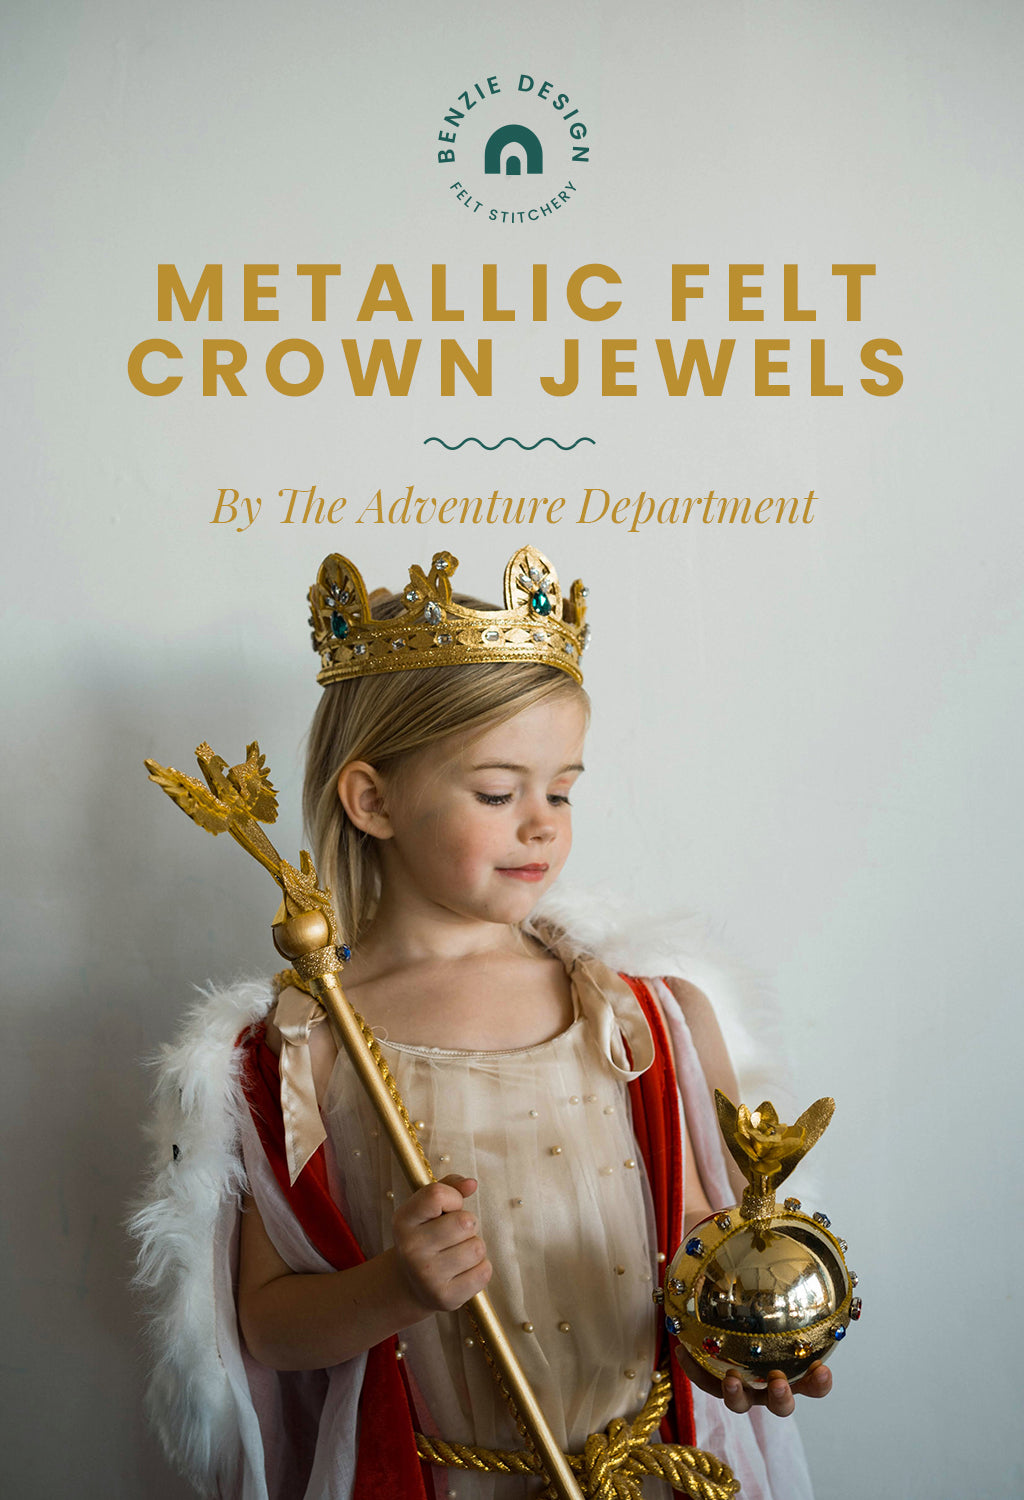 Metallic Felt Crown Jewels Halloween Costume Tutorial